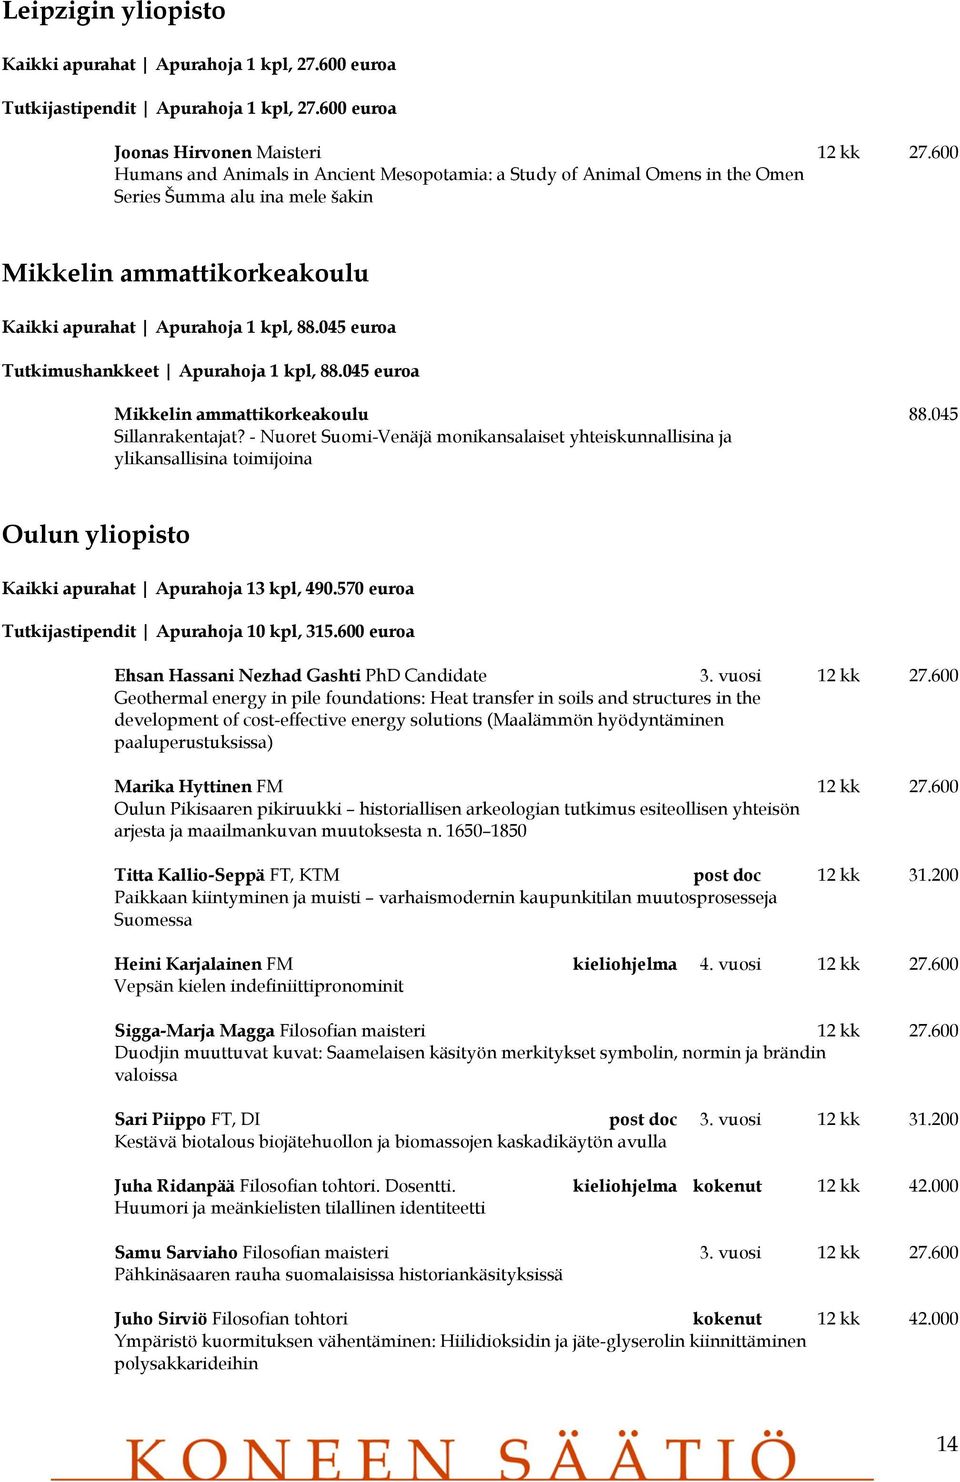 045 euroa Tutkimushankkeet Apurahoja 1 kpl, 88.045 euroa Mikkelin ammattikorkeakoulu 88.045 Sillanrakentajat?